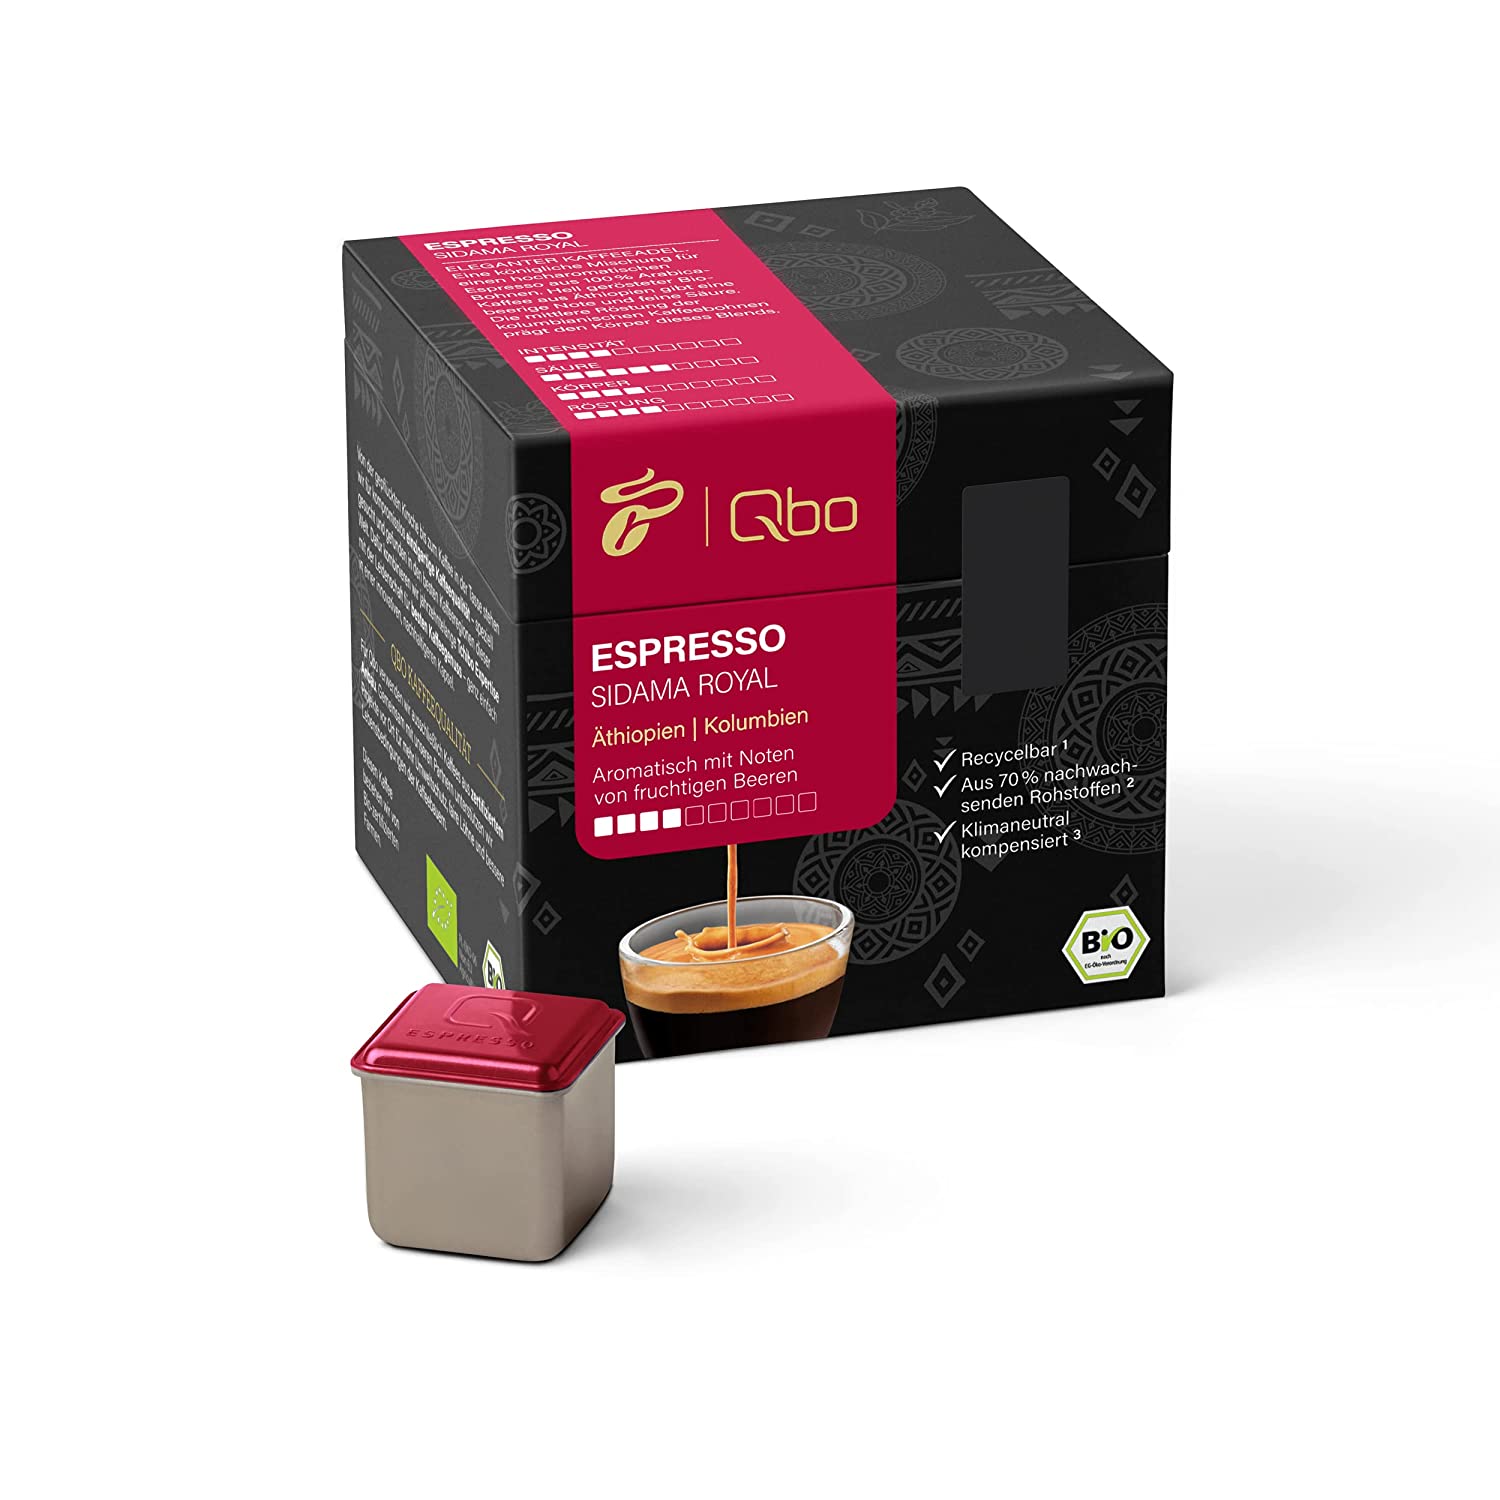 Tchibo Qbo Espresso Sidama Royal Premium Kaffeekapseln, 27 Stück (Espresso, Intensität 4/10, aromatisch und fruchtig), nachhaltig, aus 70% nachwachsenden Rohstoffen & klimaneutral kompensiert